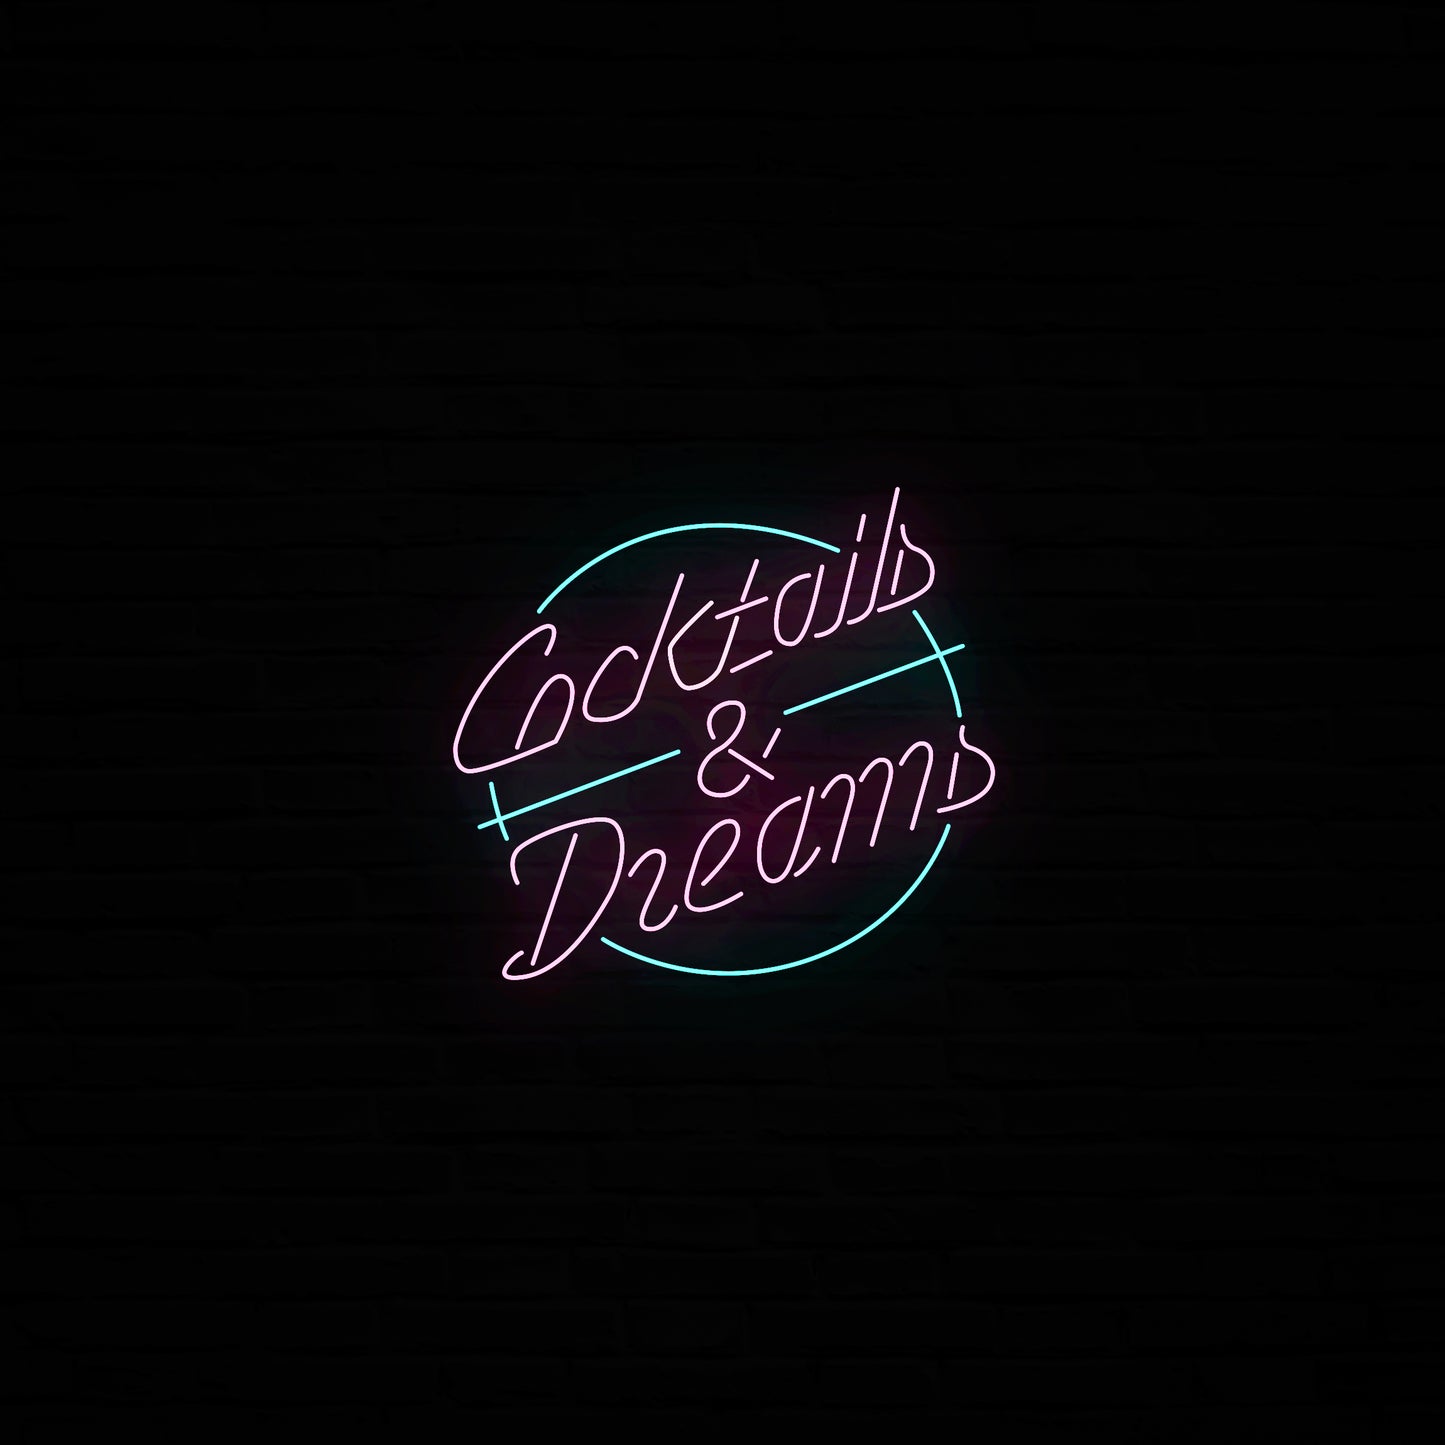 Coctails & Dreams Neon LED